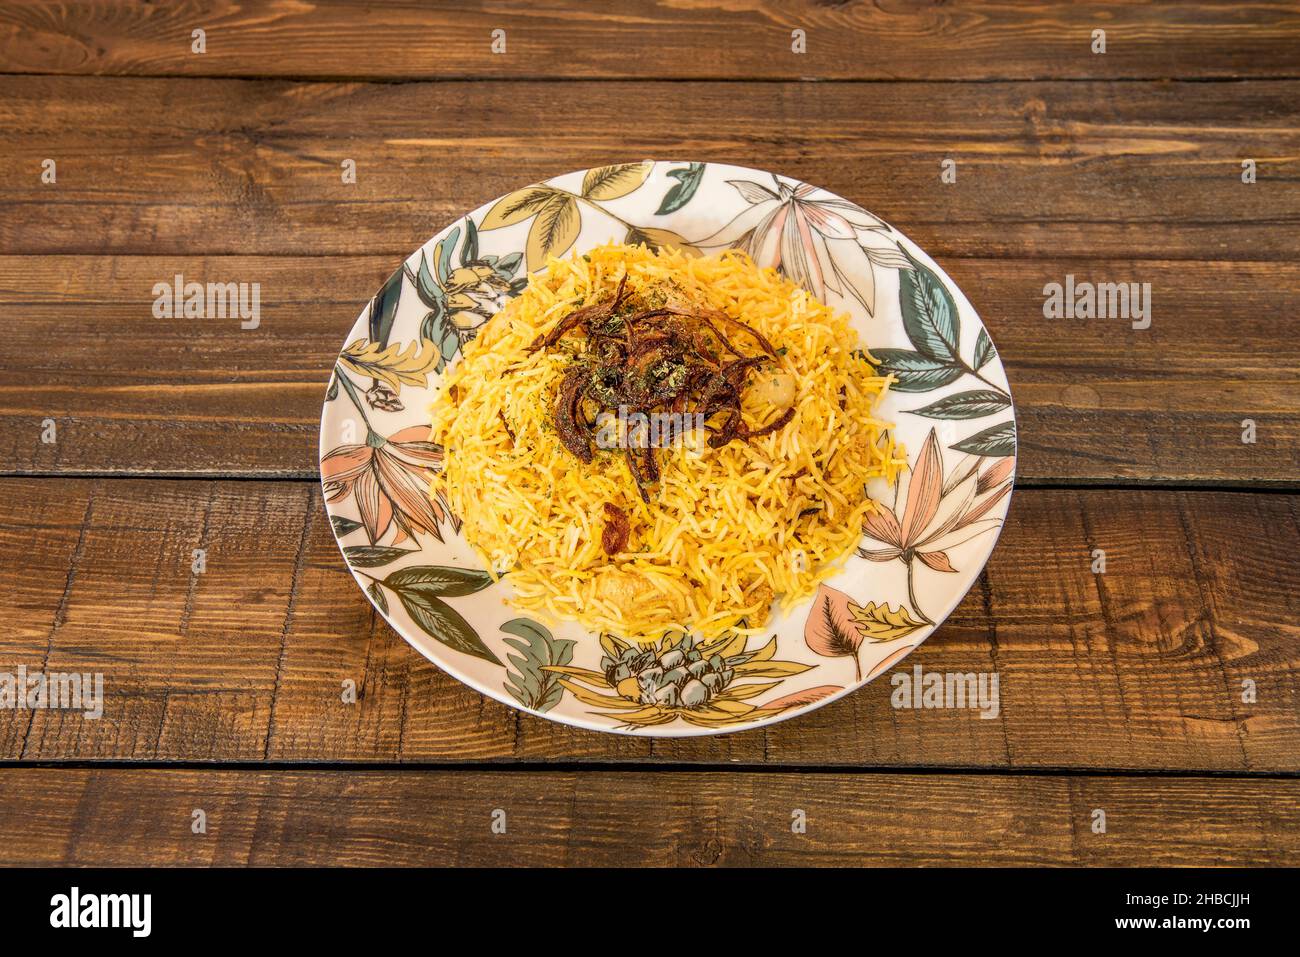 Biryani es un plato de arroz de la cocina pakistaní y turca elaborado con una mezcla de especias, así como arroz basmati, carne, verduras y yogur. Hay Stock Photo